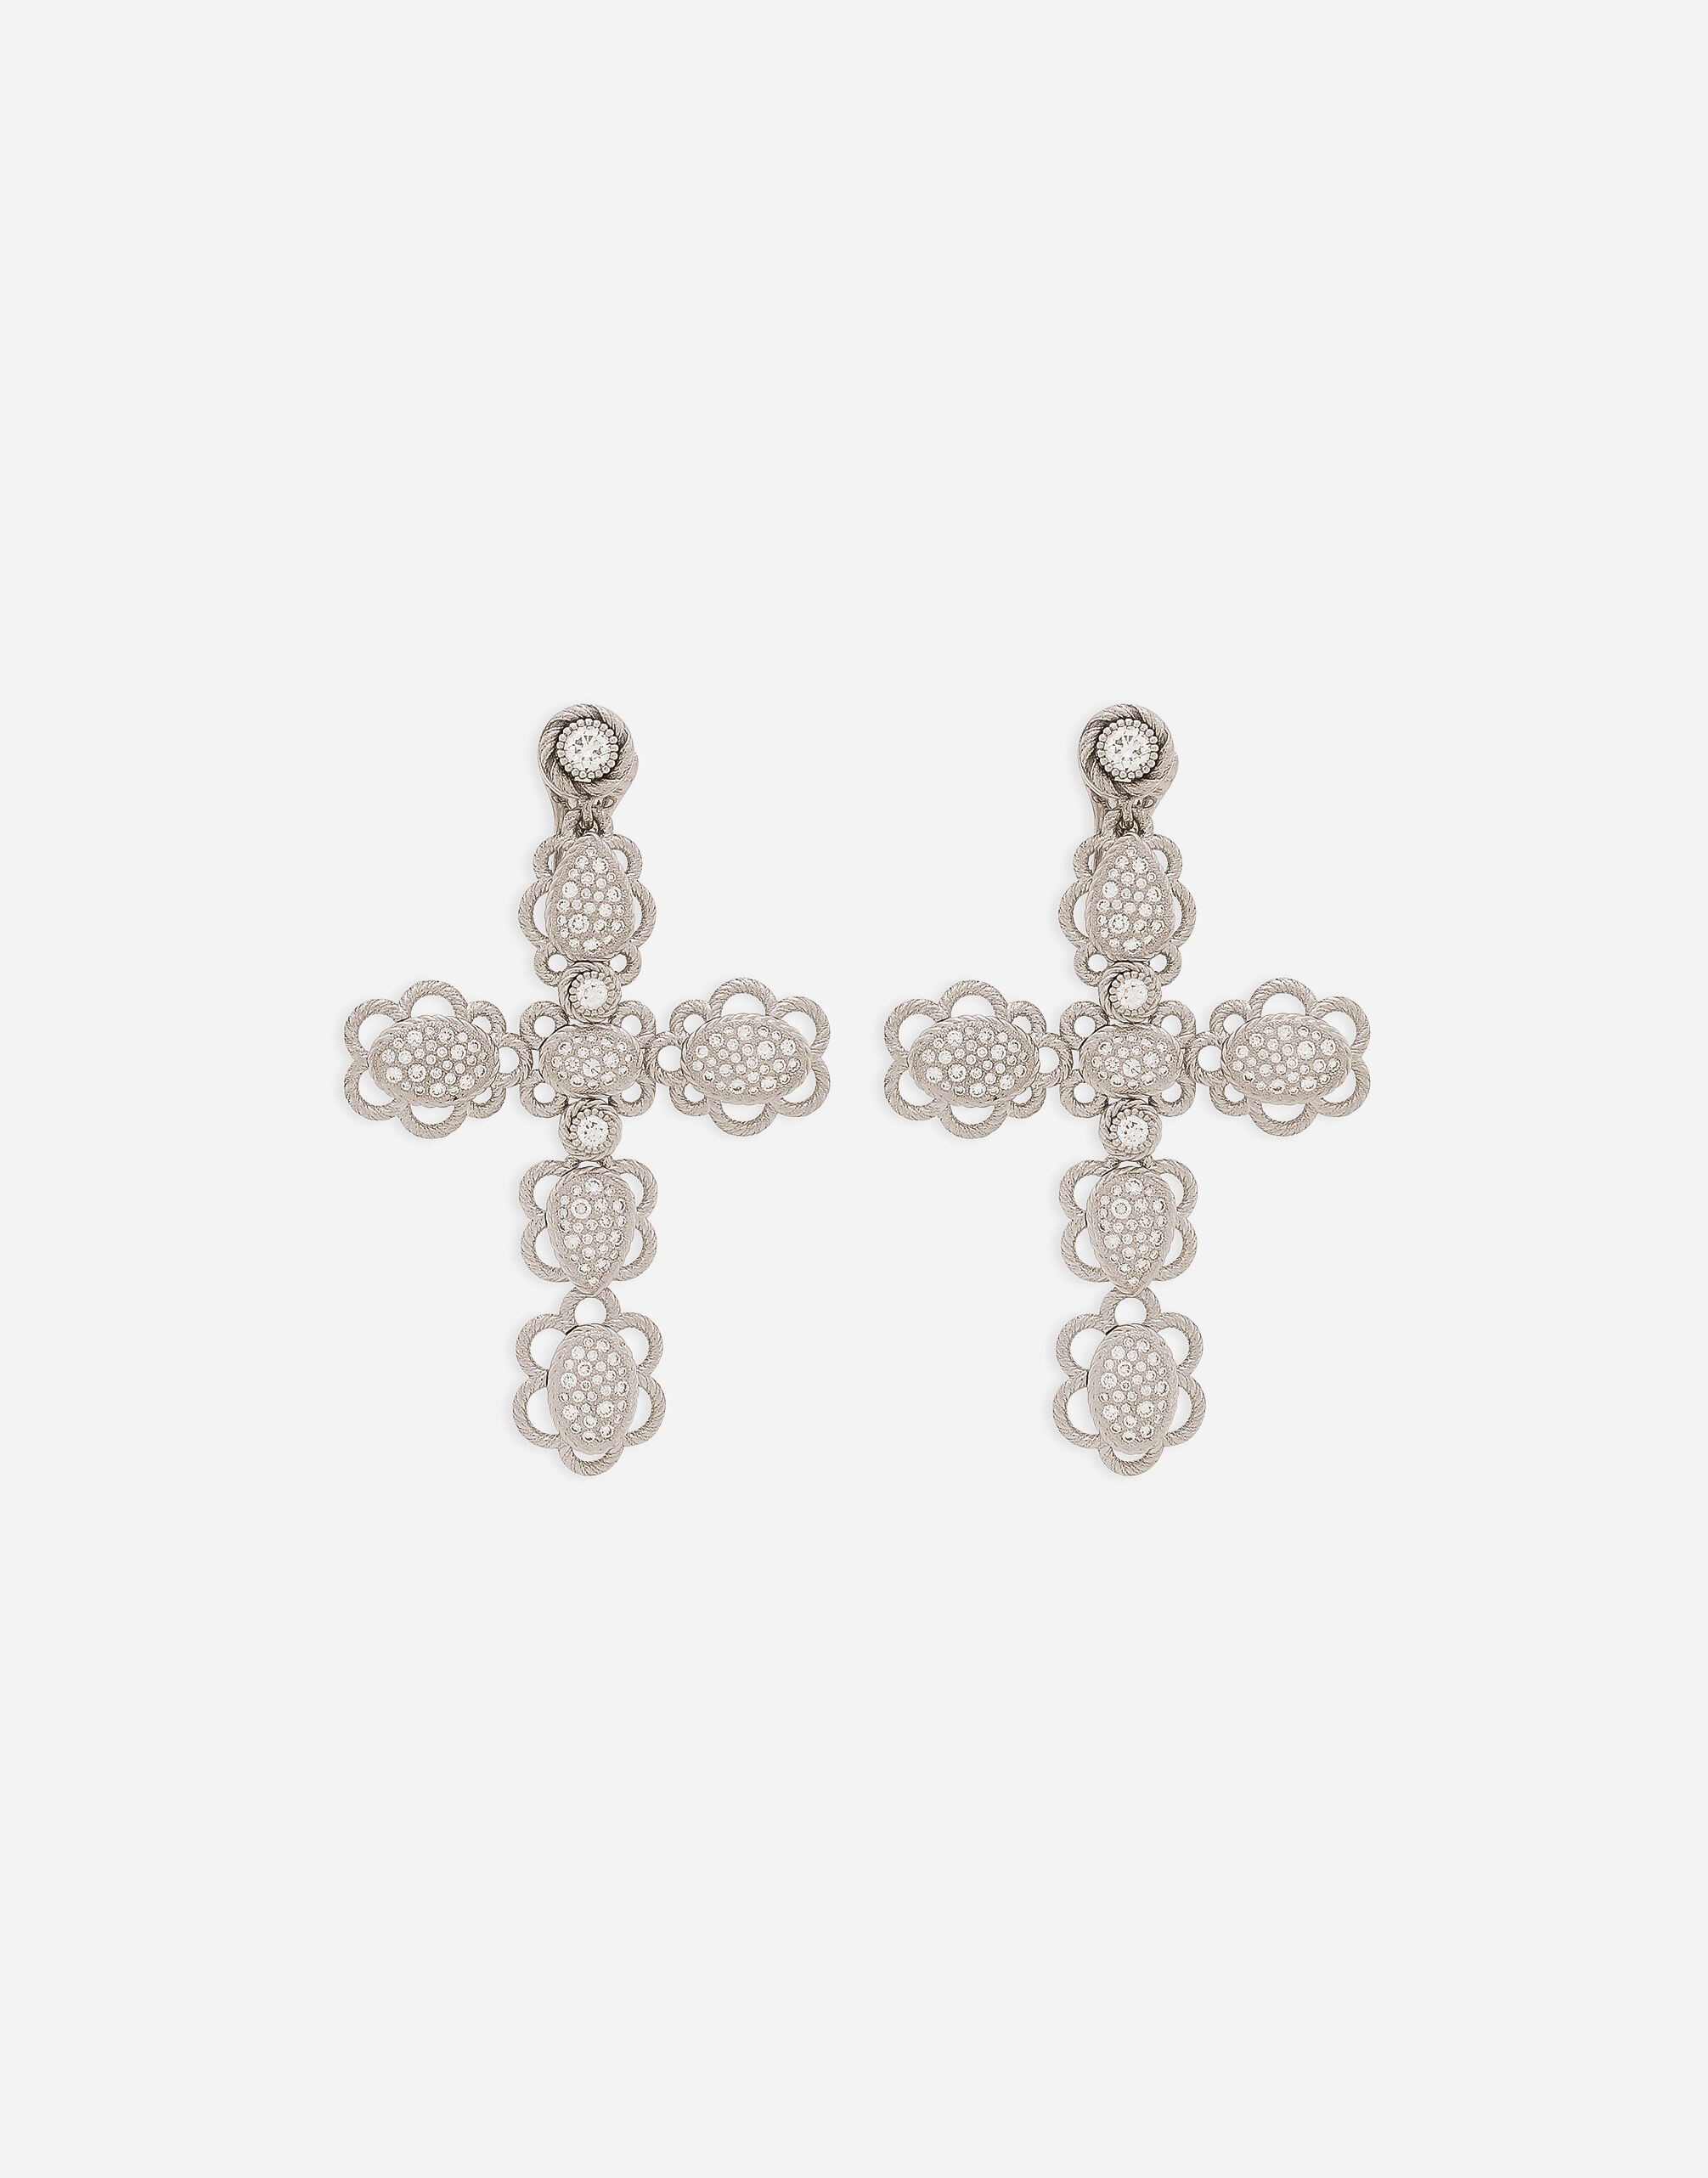 Dolce & Gabbana Easy Diamond earrings in white gold 18kt and diamonds pavé White WSQA1GWTSQS